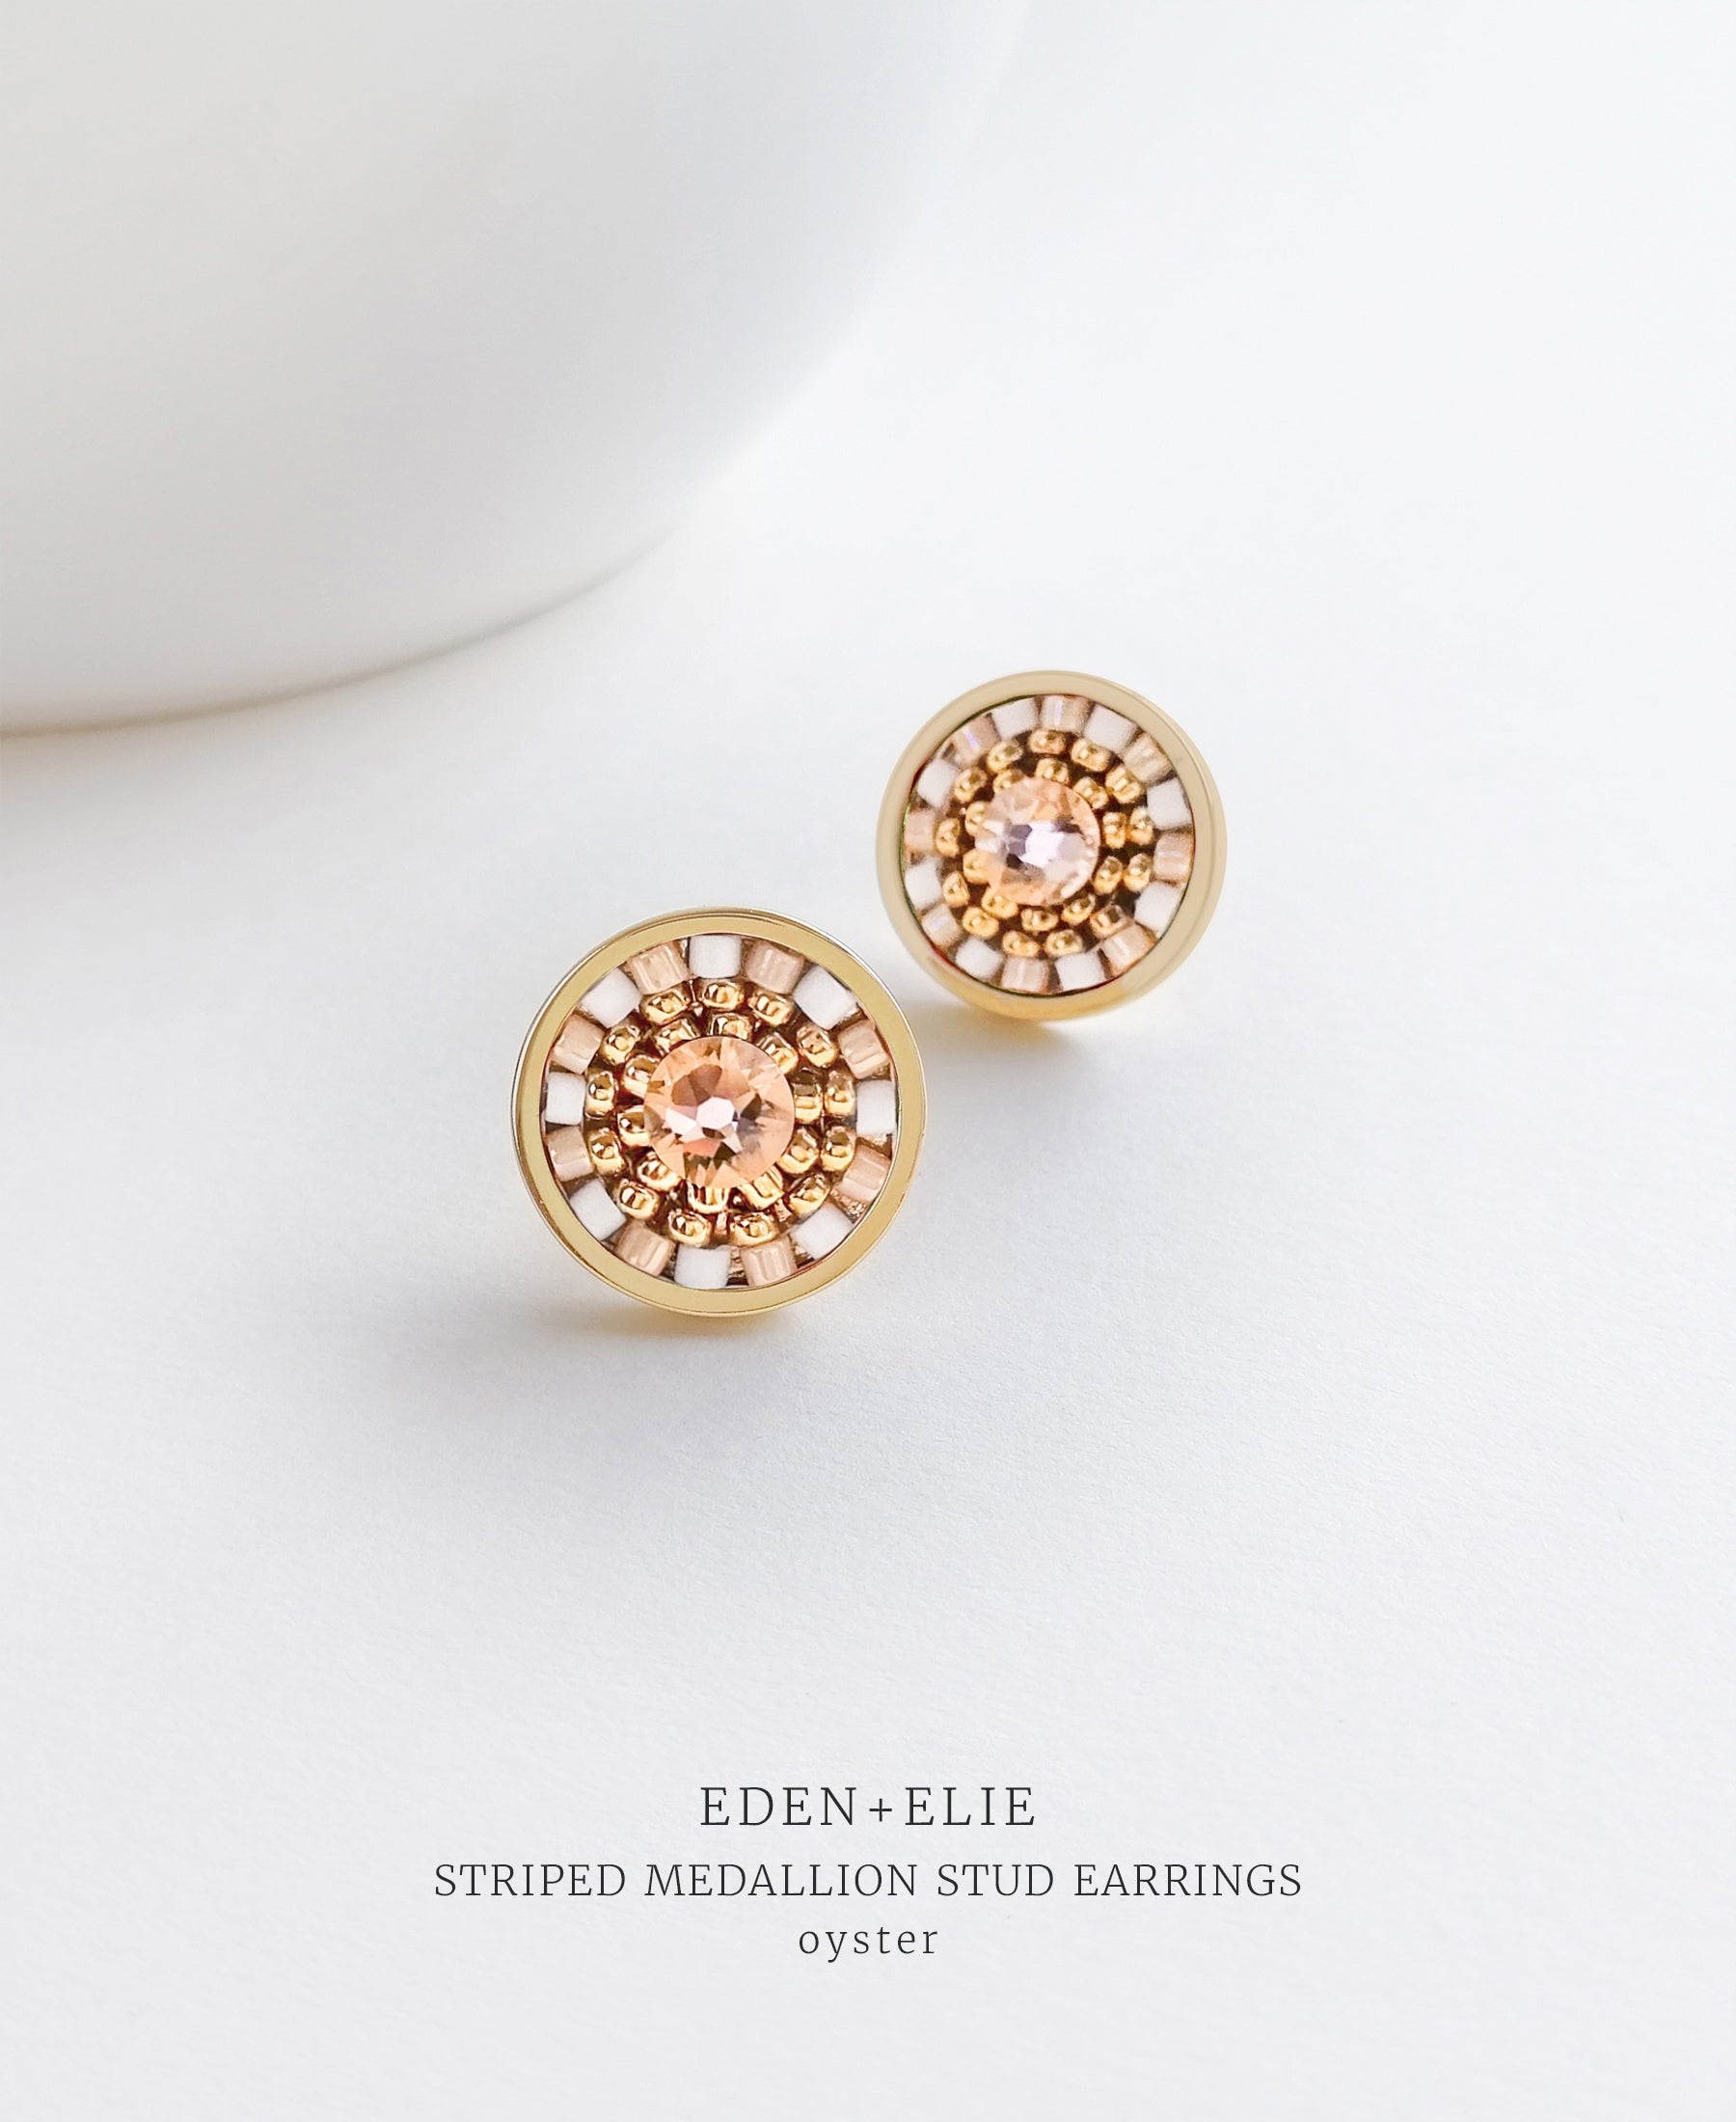 EDEN + ELIE Striped Medallion stud earrings - oyster